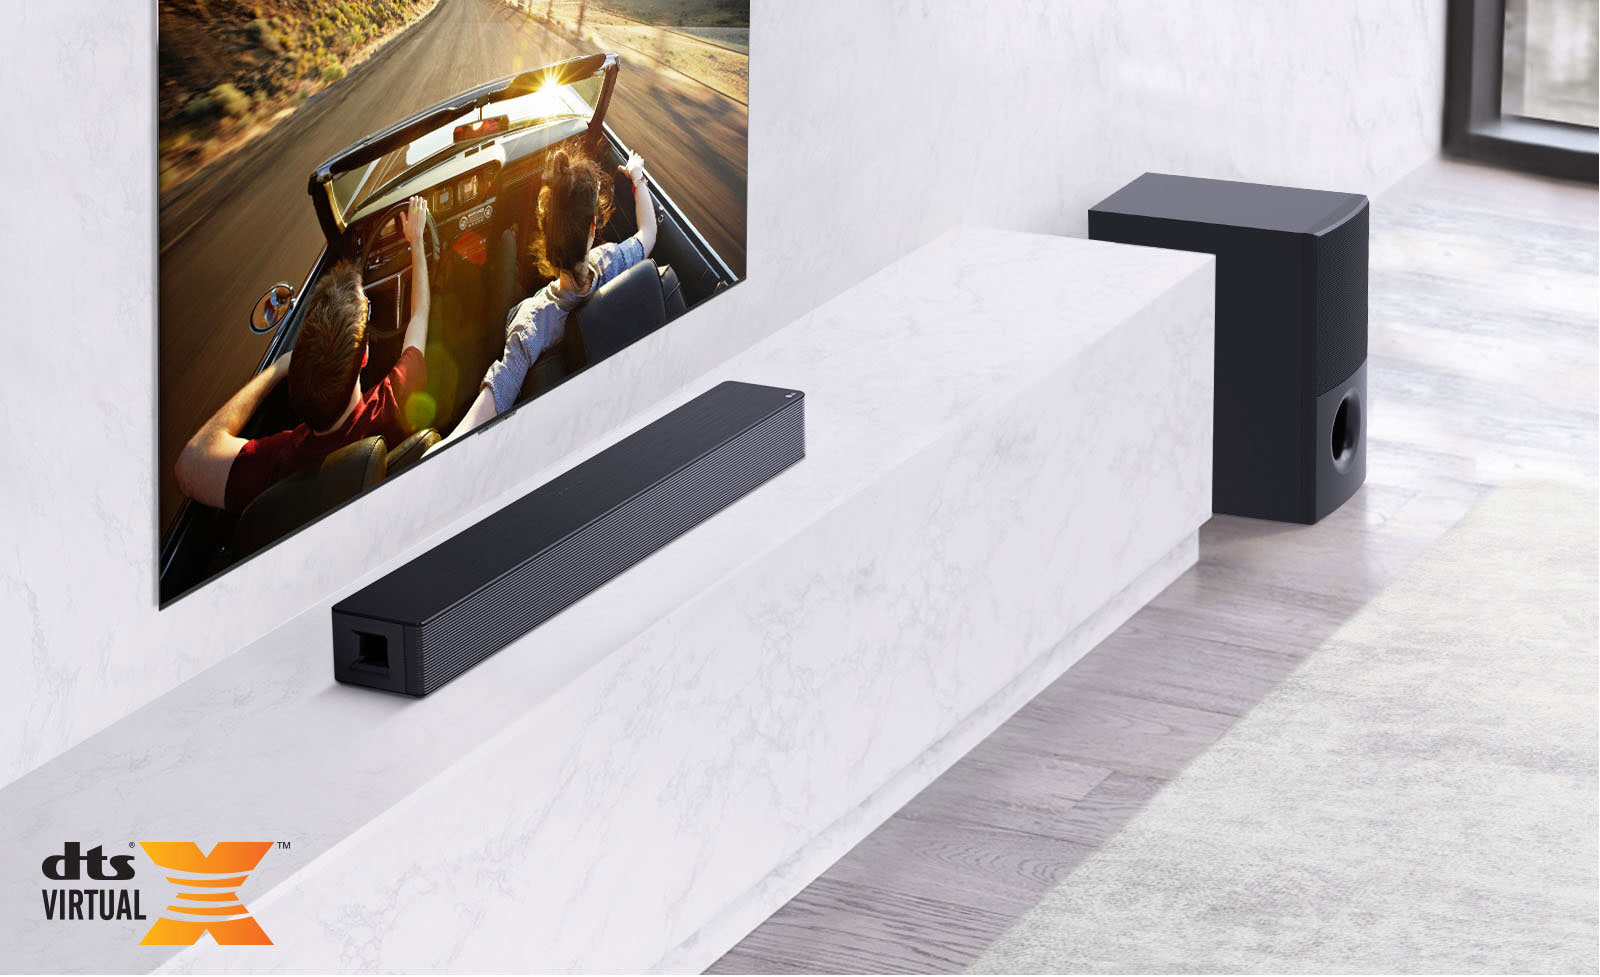 El televisor está instalado en la pared, la barra de sonido LG está debajo encima de un estante de mármol blanco con un subwoofer a la derecha. El televisor muestra una pareja en un coche.